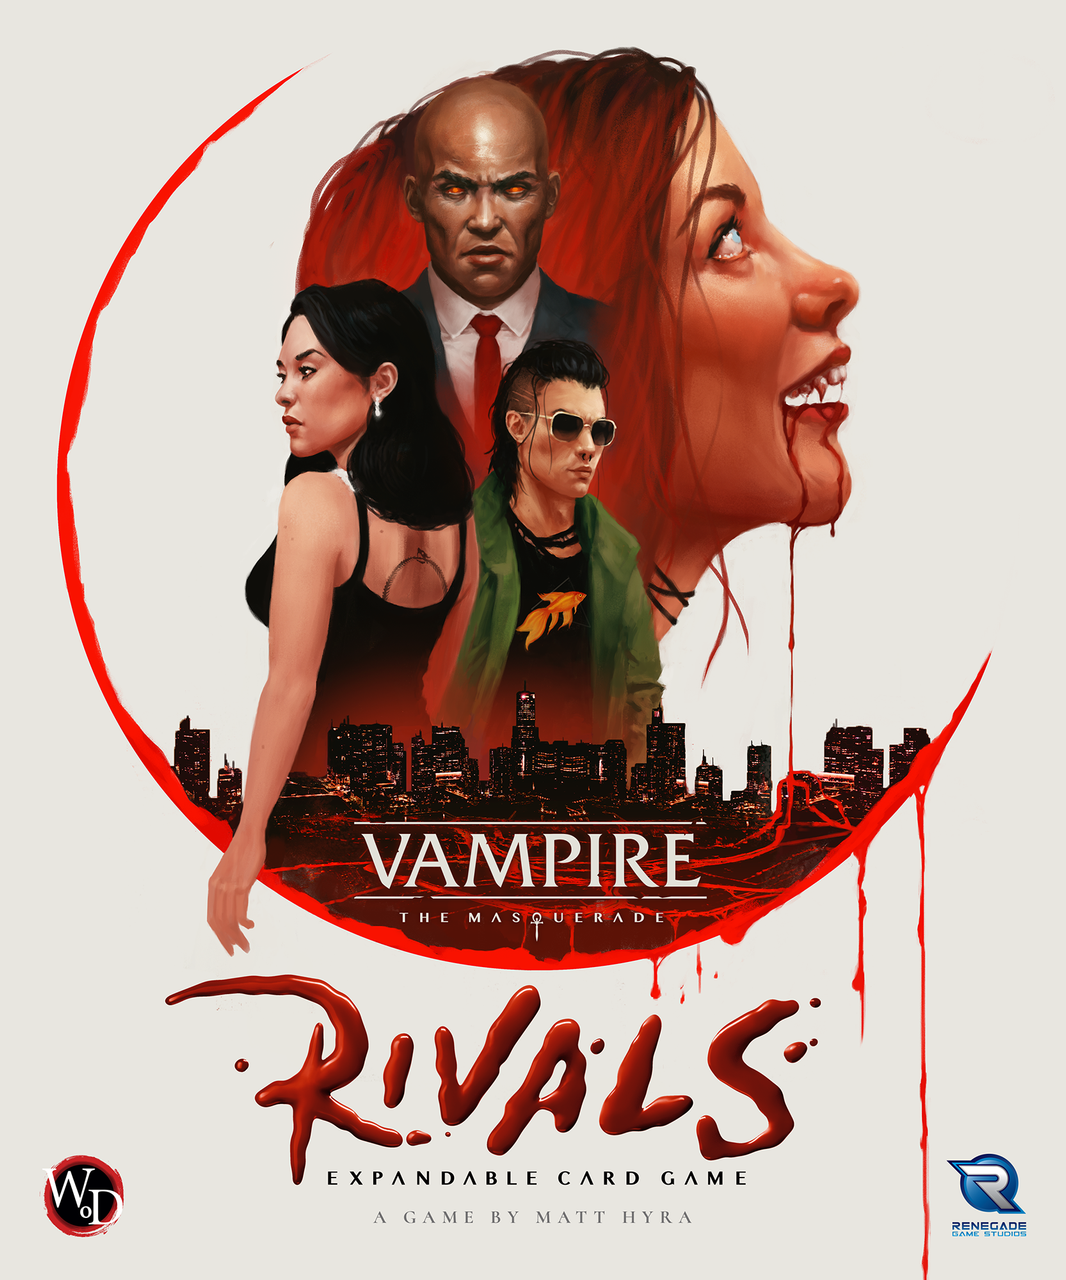 Coming Soon: Three Vampire: The Masquerade interactive novels! - Choice of  Games LLC